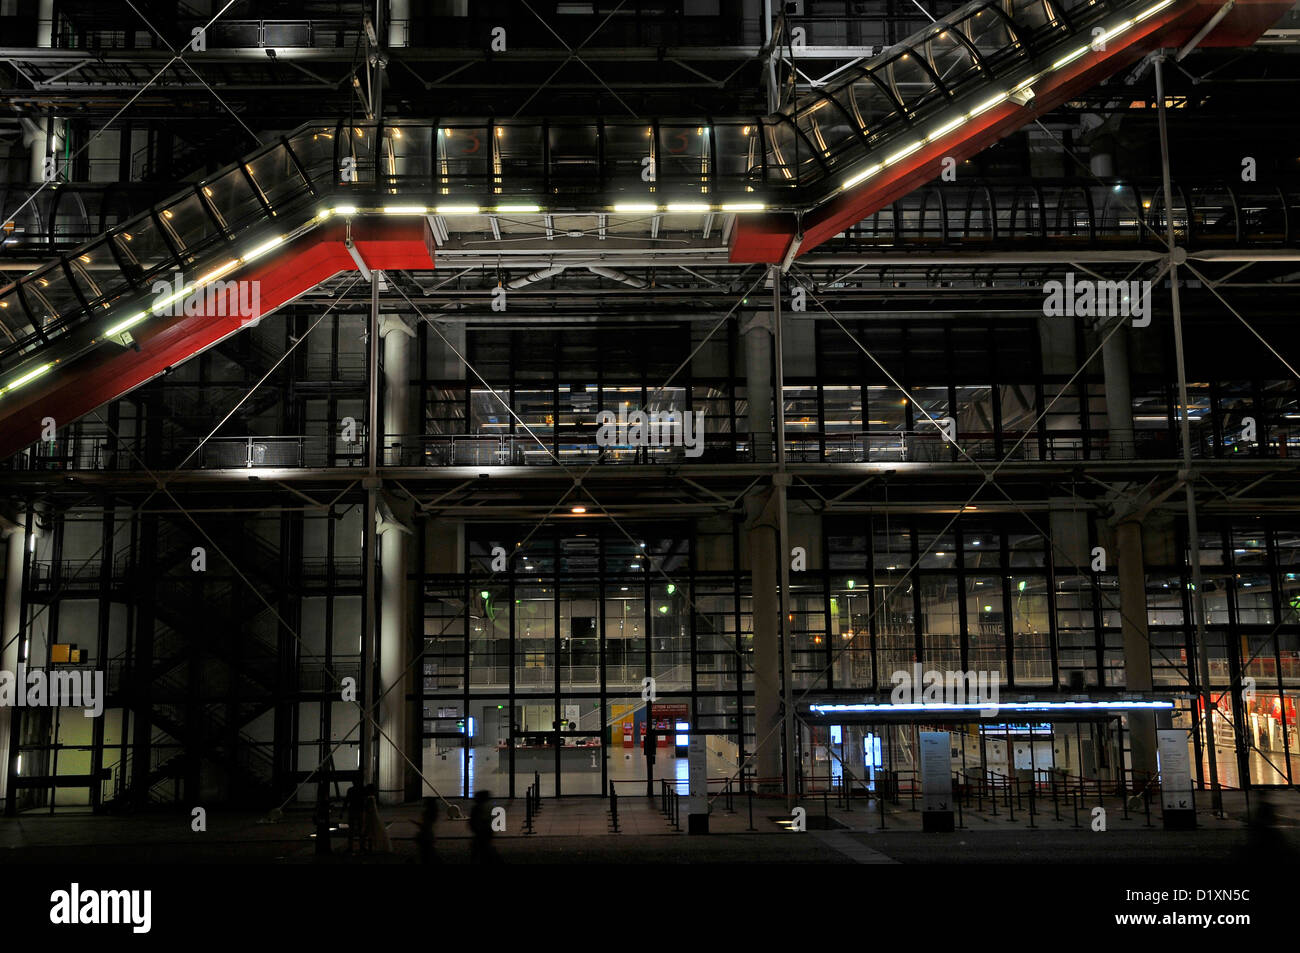 Le Centre Pompidou Gorge, conçu par l'architecte Renzo Piano dans le style de l'architecture high-tech. C'est à Paris, France. Banque D'Images